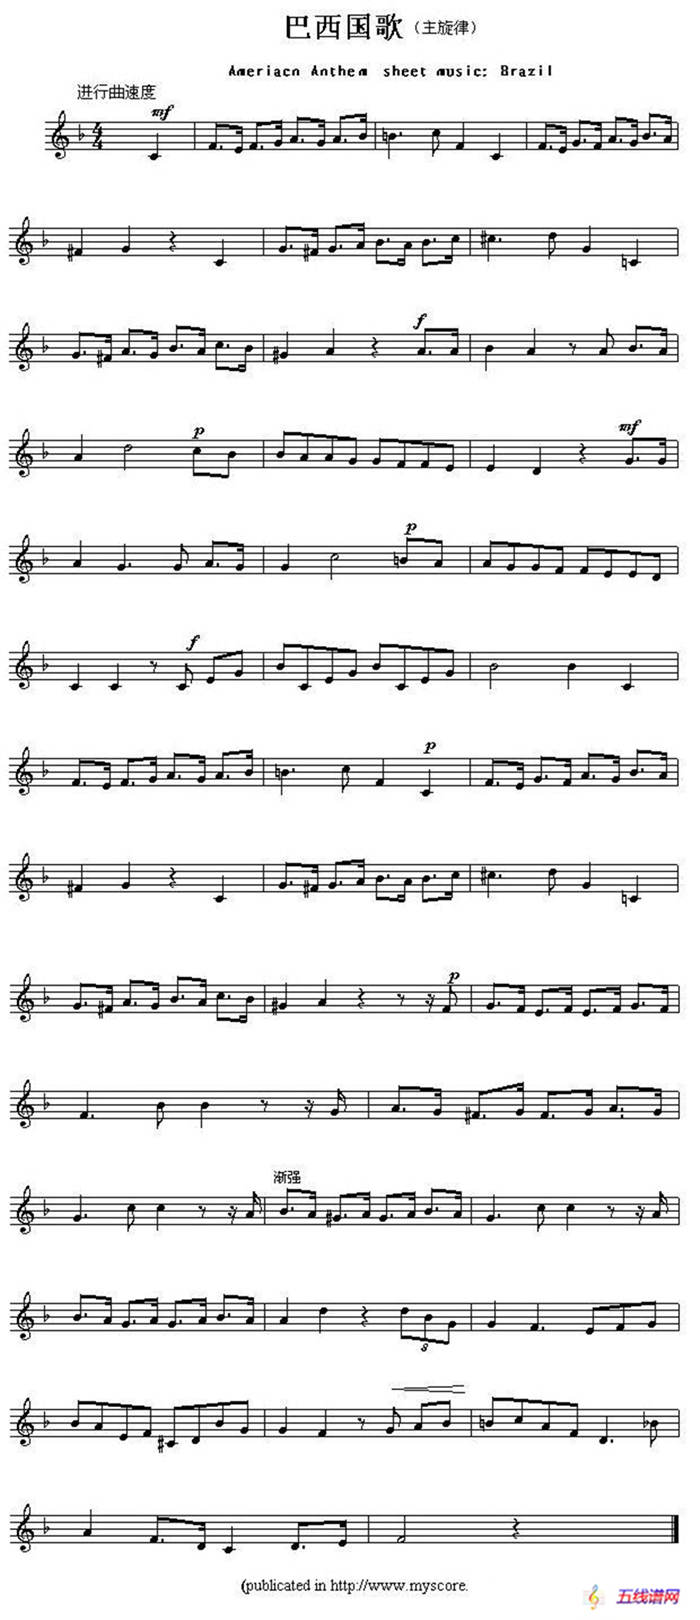 各国国歌主旋律：巴西（Ameriacn Anthem sheet music:Brazil）